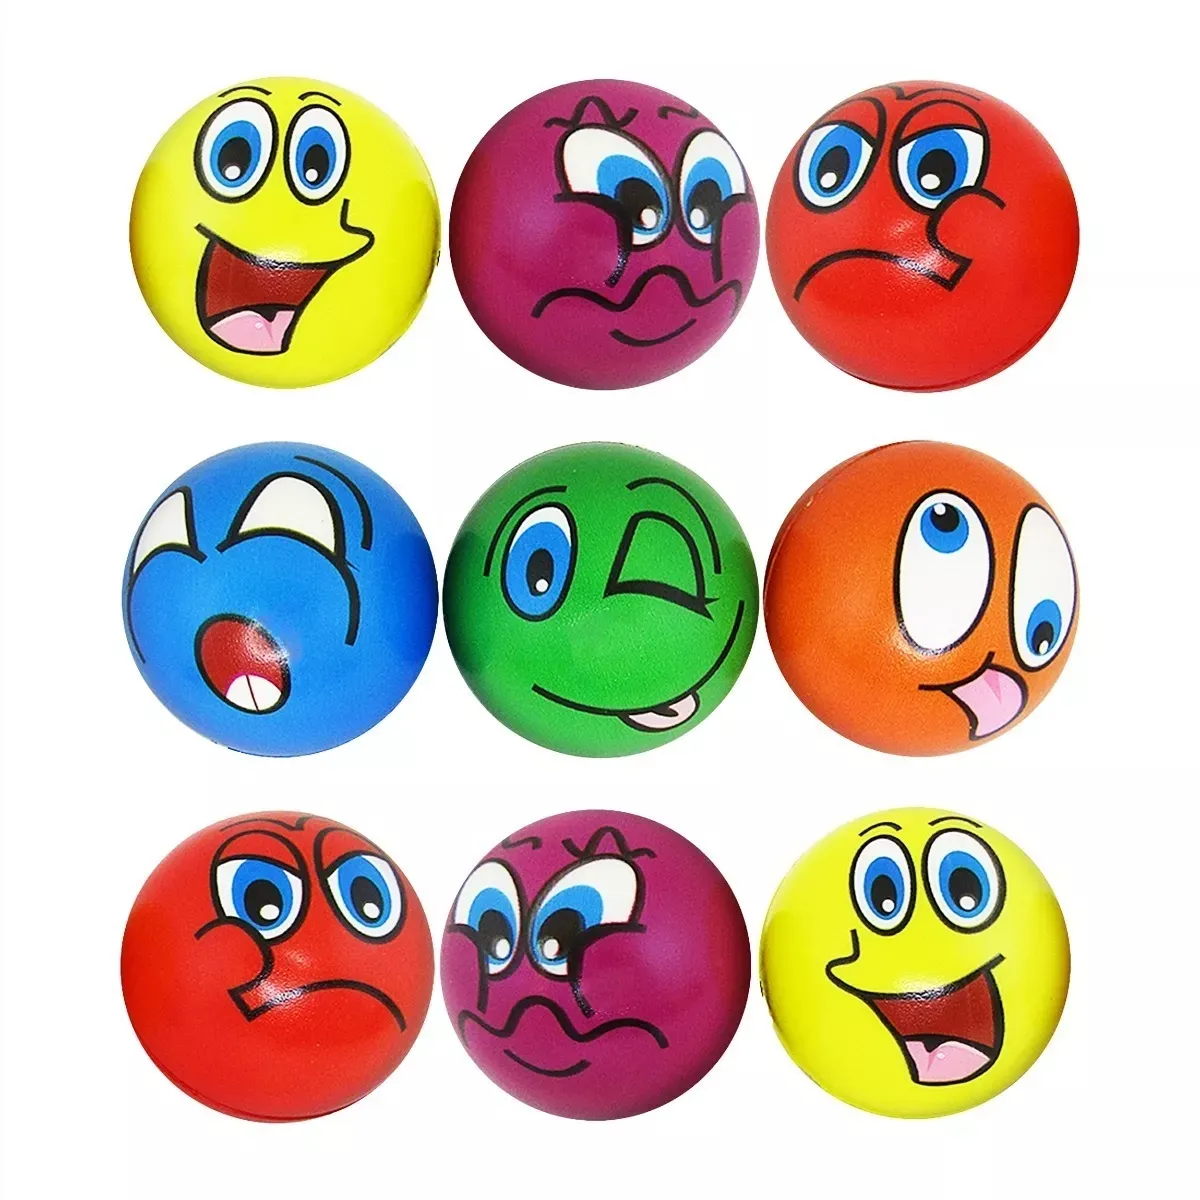 Pelota Bola Antiestrés Emoticones Multicolor X 12 Unidades